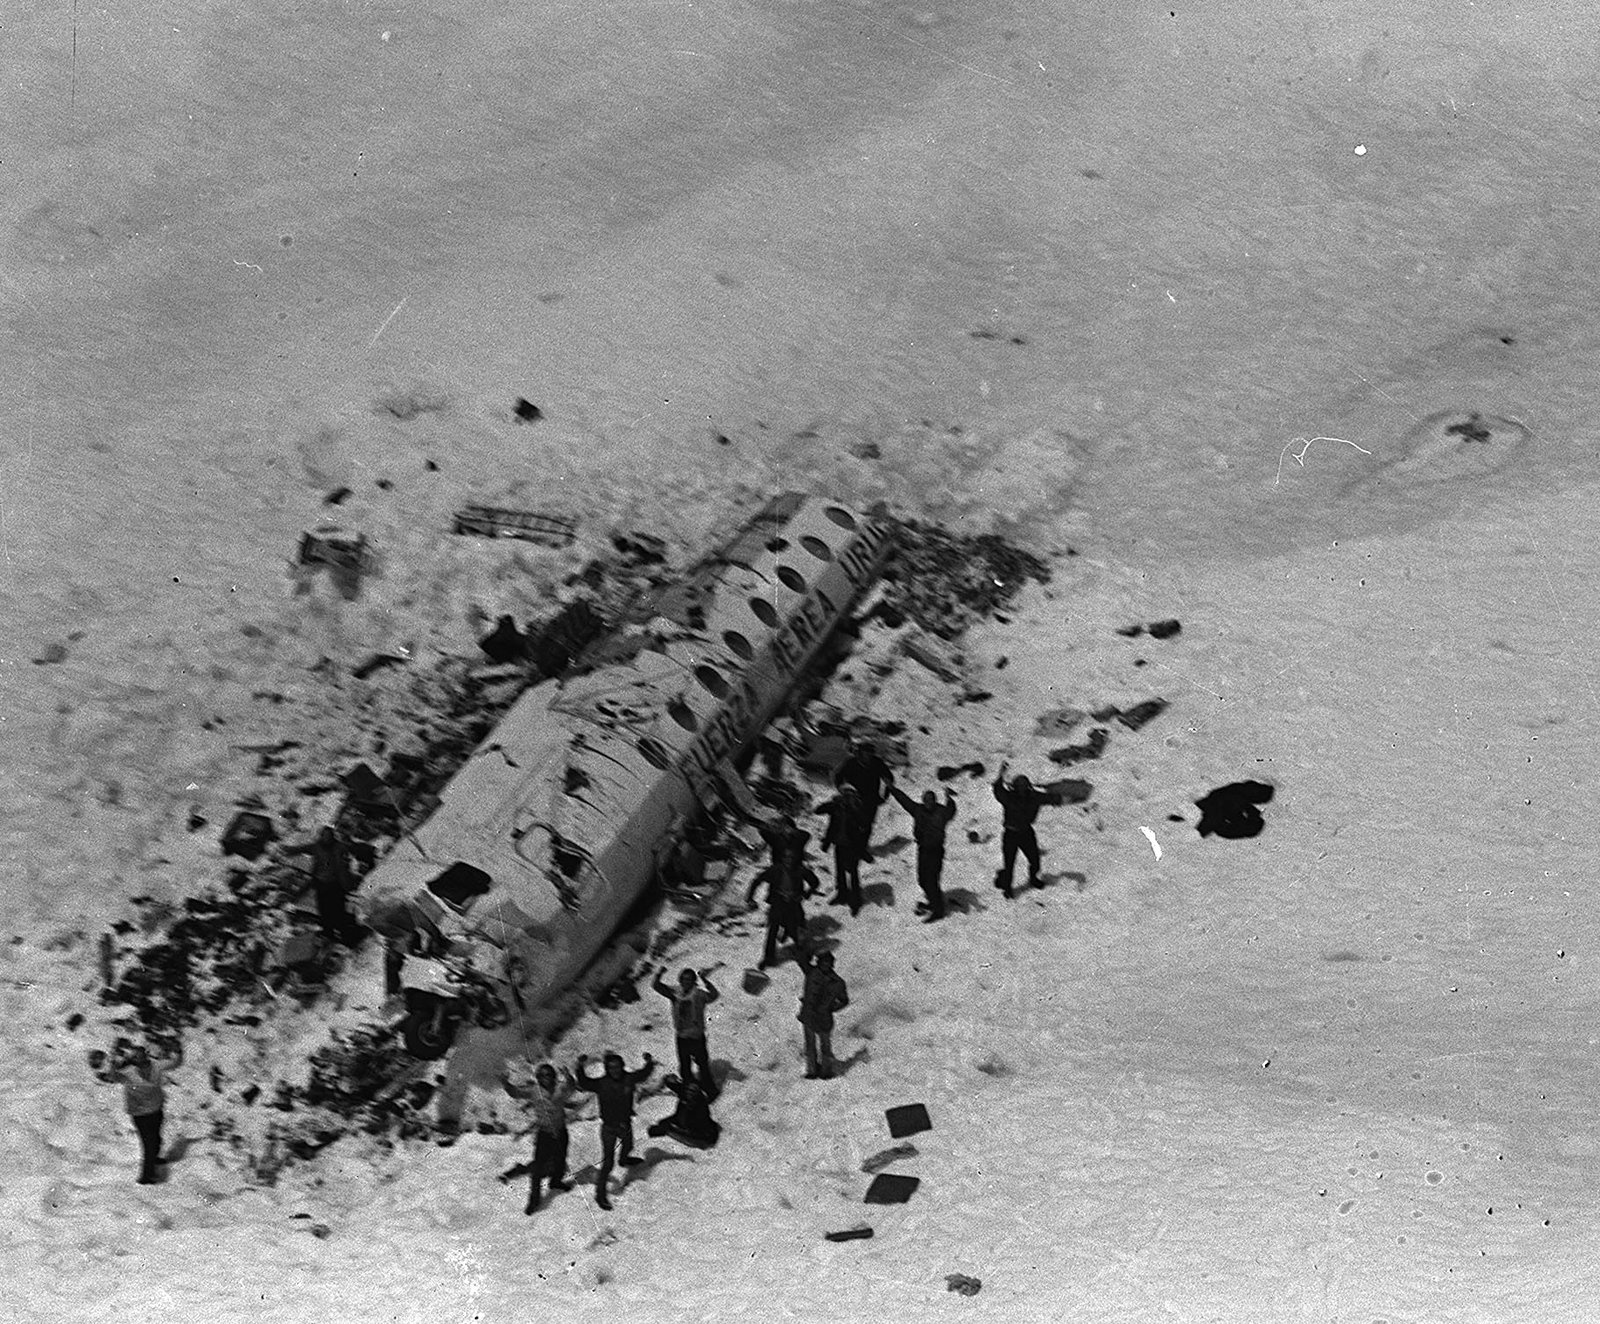 Le vol uruguayen 571 est un tragique accident d’aviation qui s’est produit en 1972. L’avion transportant 45 passagers s’est écrasé dans les Andes et les survivants ont eu recours au cannibalisme avant d’être secourus deux mois plus tard.